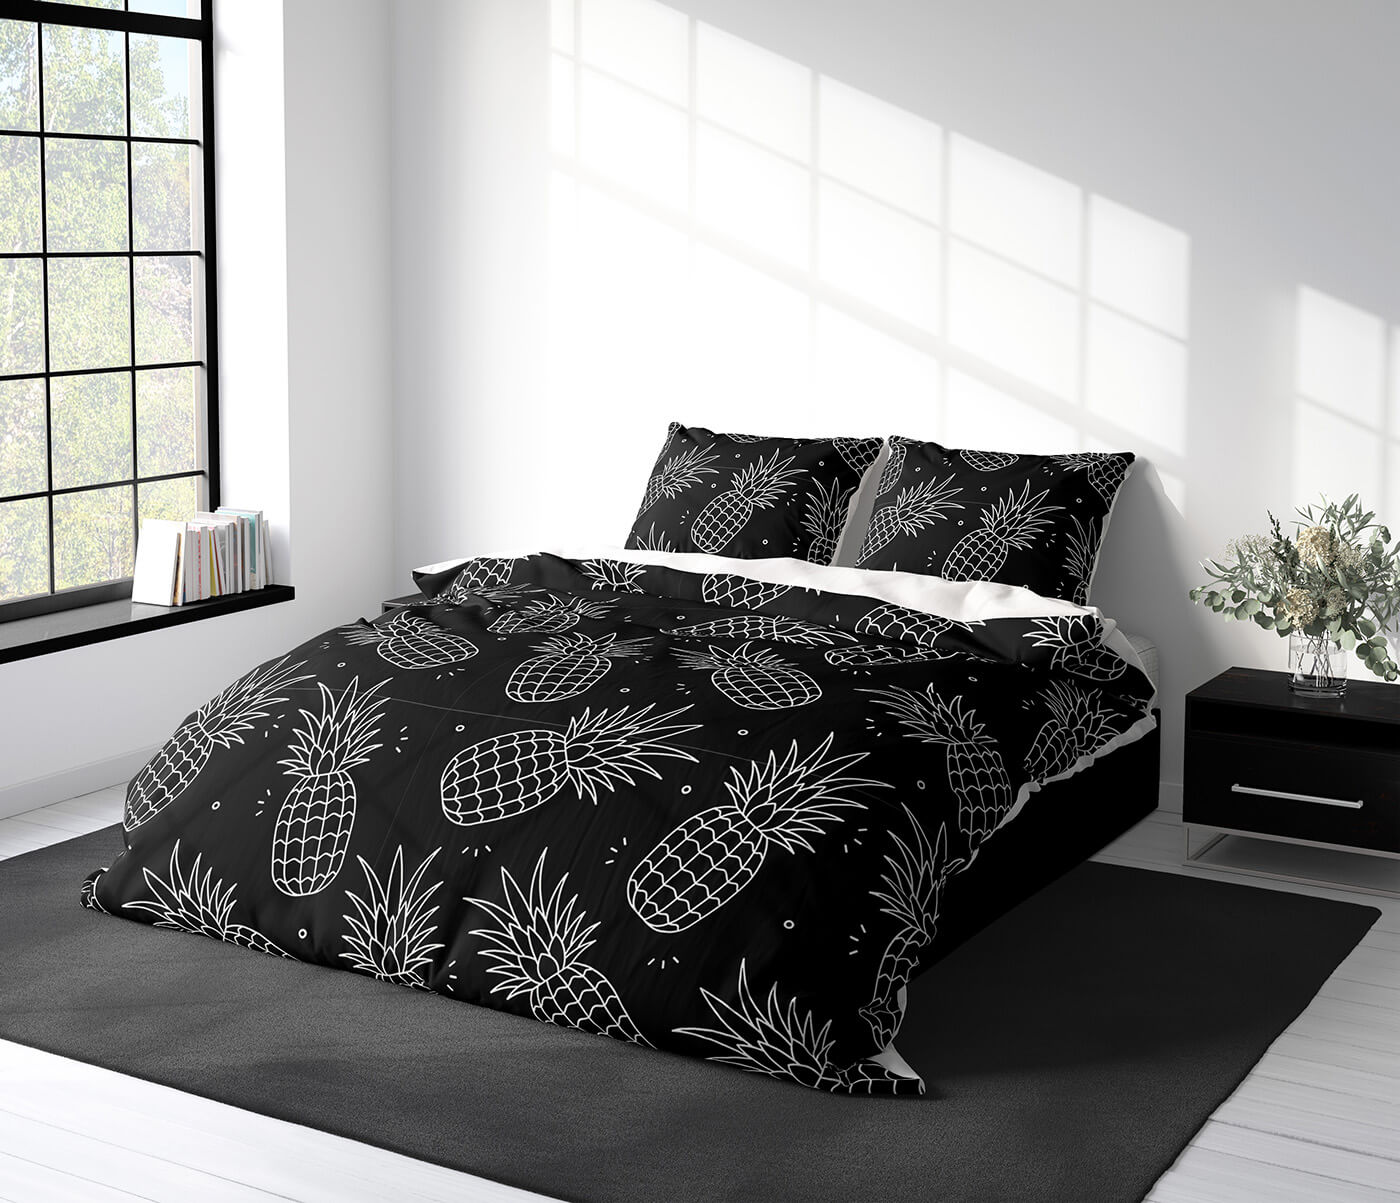 White & Black Pineapples Bedding Set